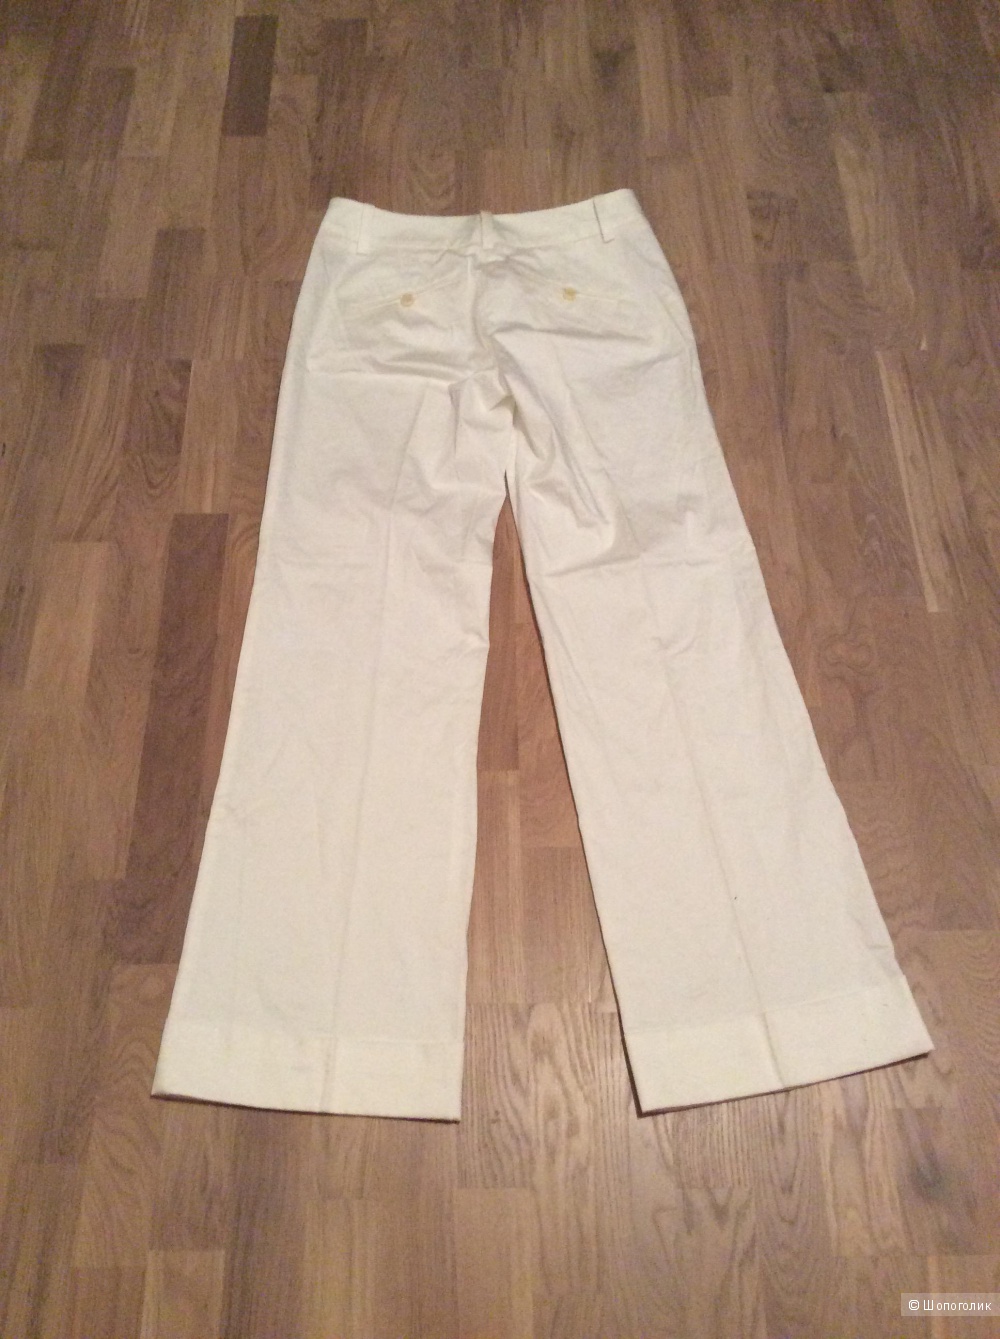 Новые белые брюки Trina Turk размер 6